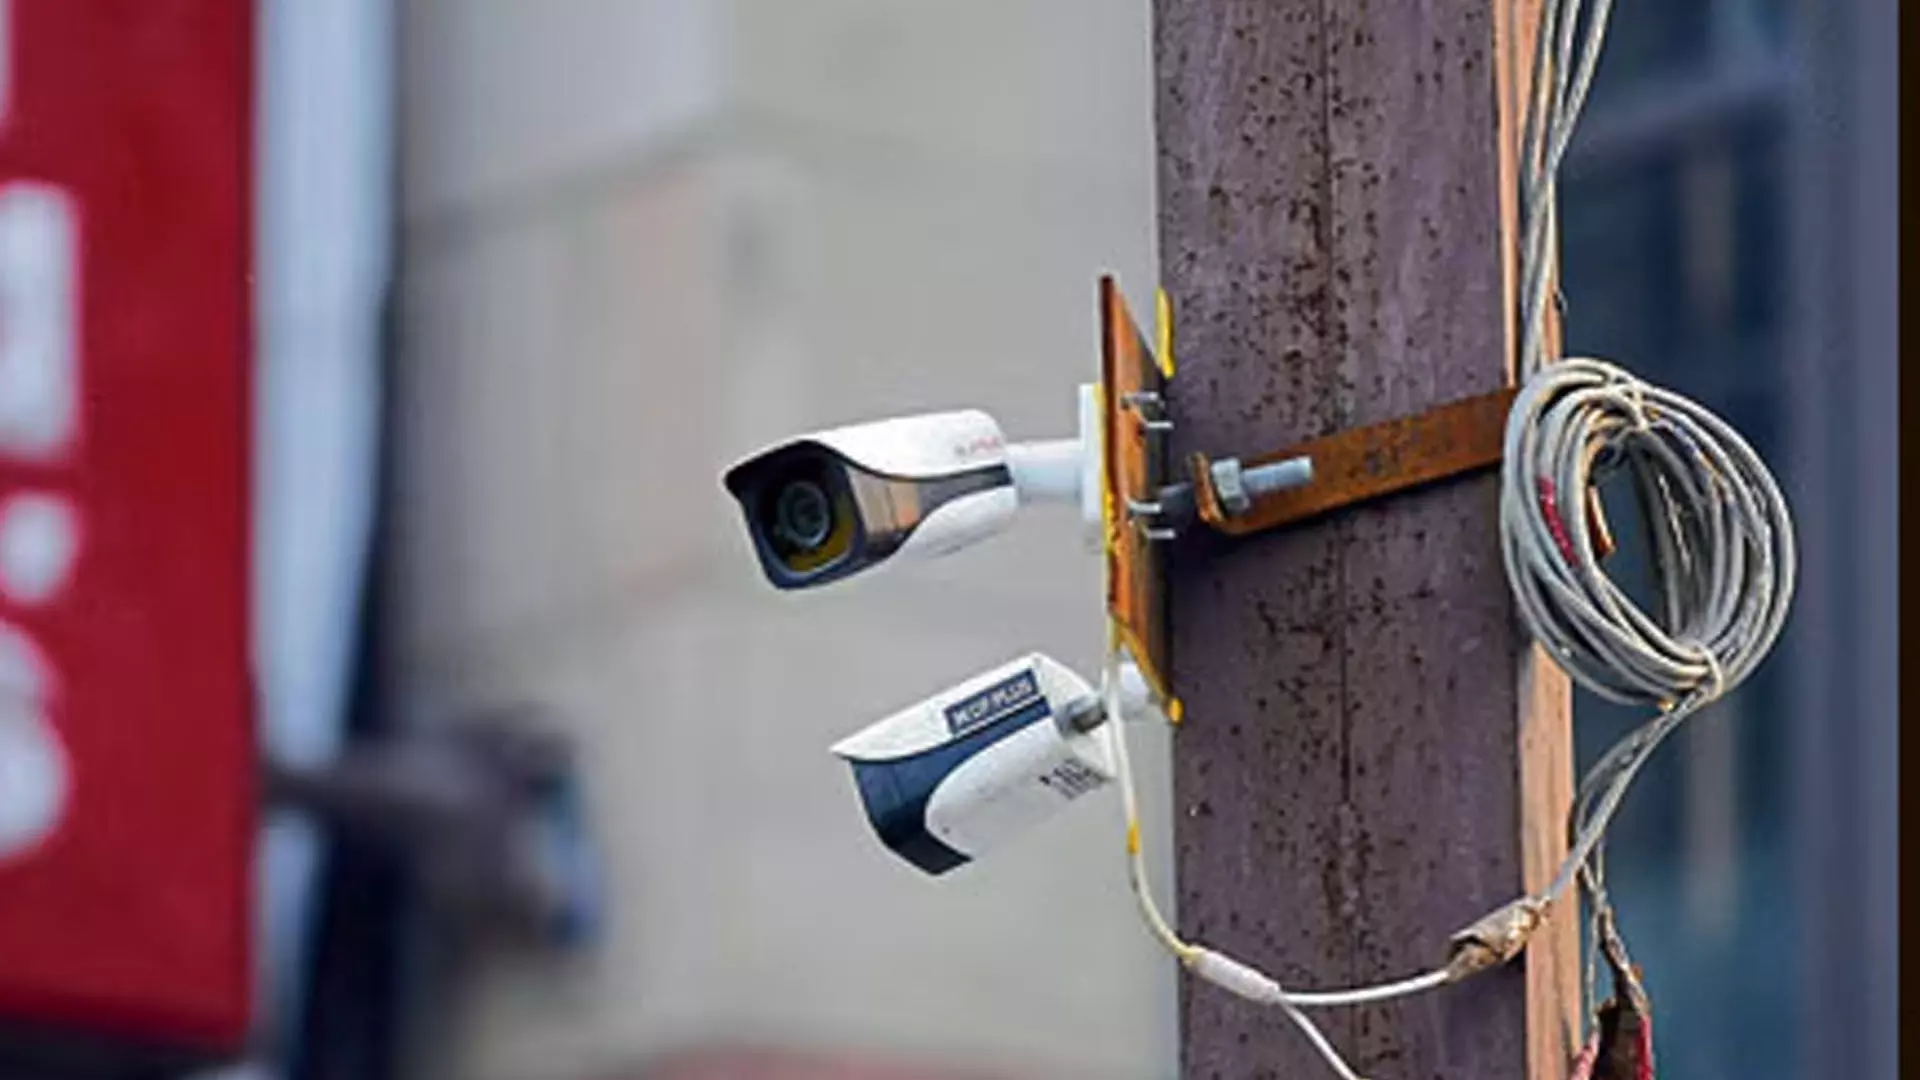 HARYANA: पंचकूला में सीसीटीवी कैमरे ठीक न करने पर होगी कार्रवाई